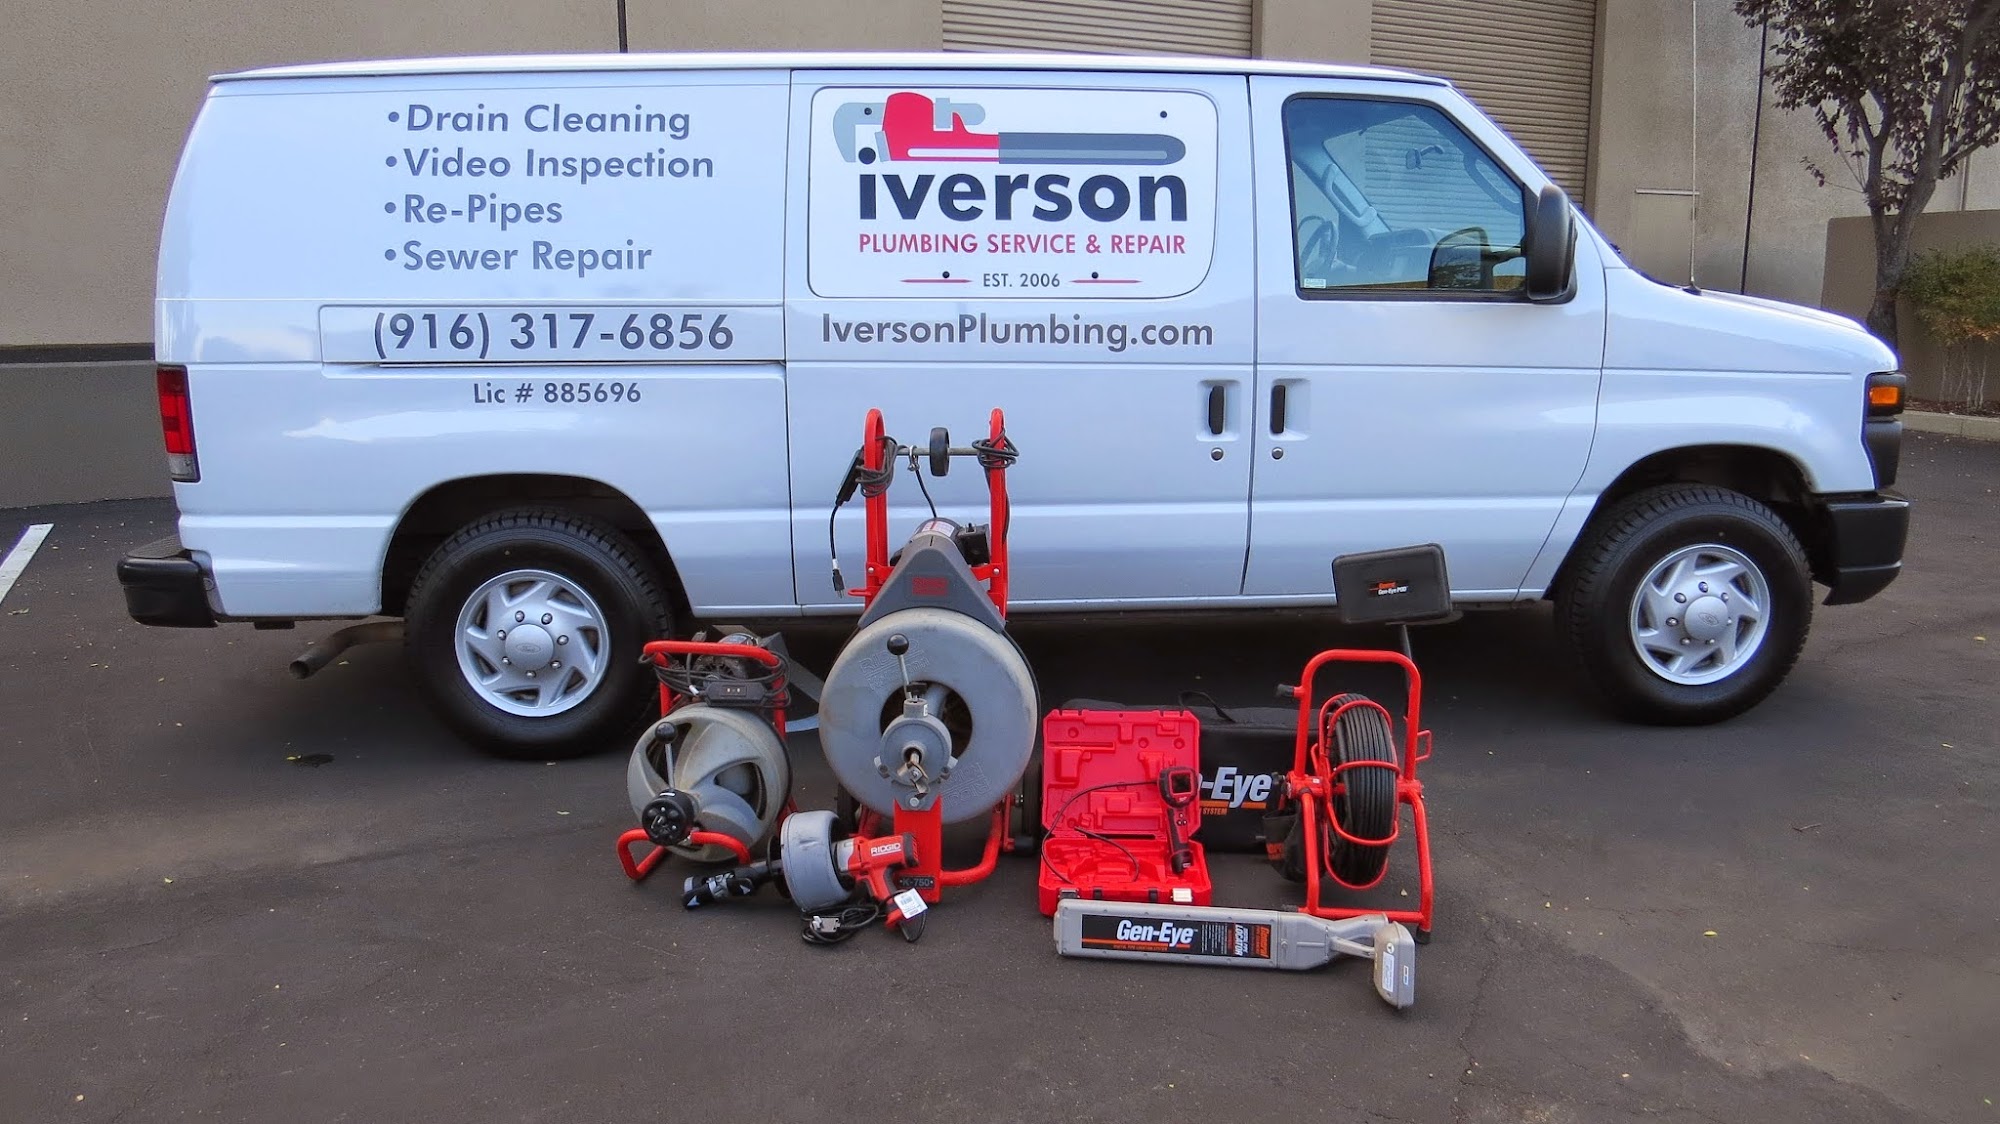 Iverson Plumbing Service & Repair